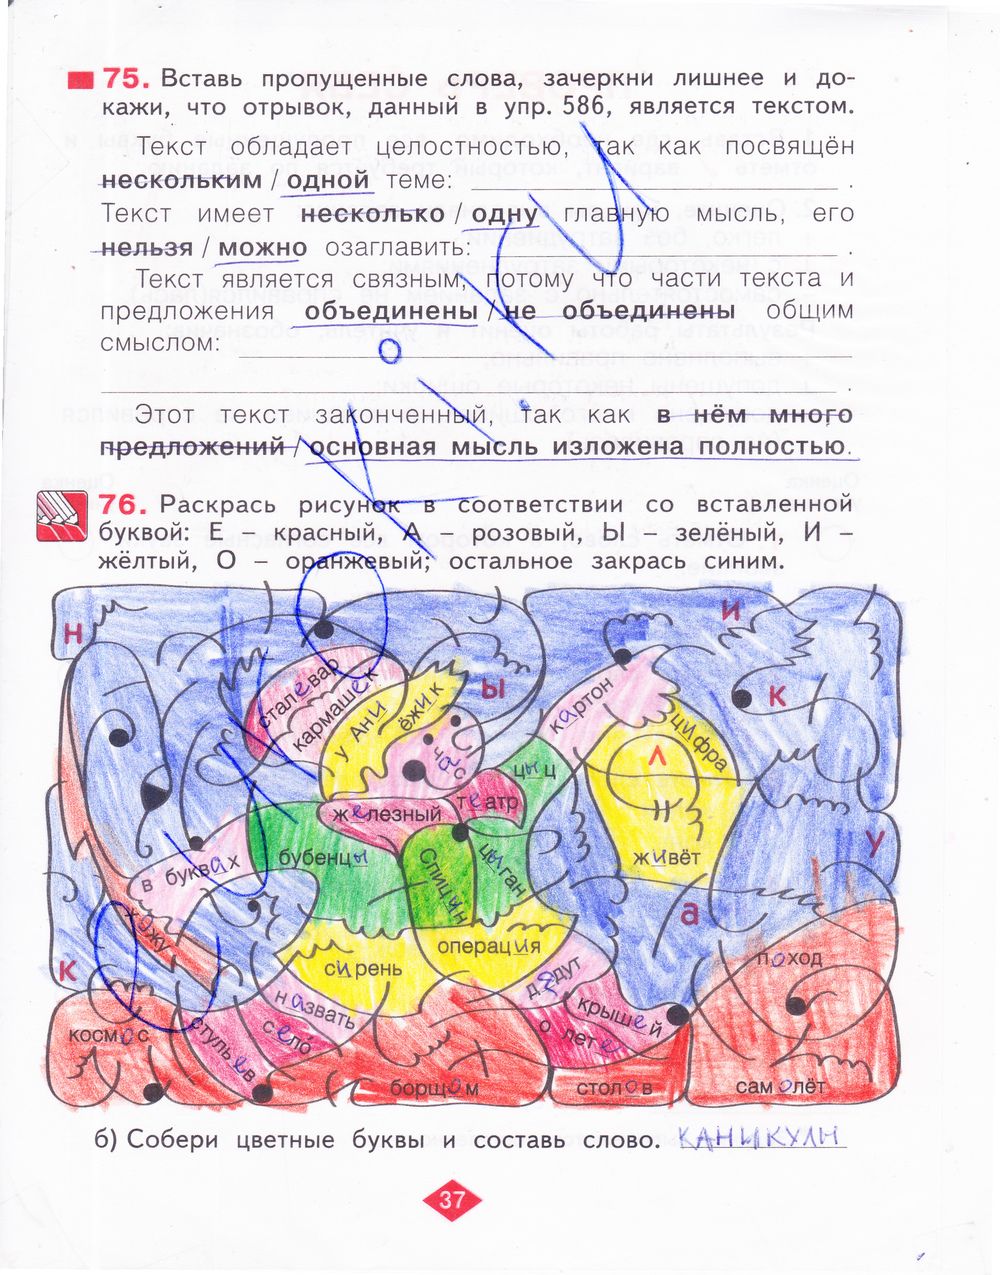 ГДЗ Русский язык 3 класс - стр. 37